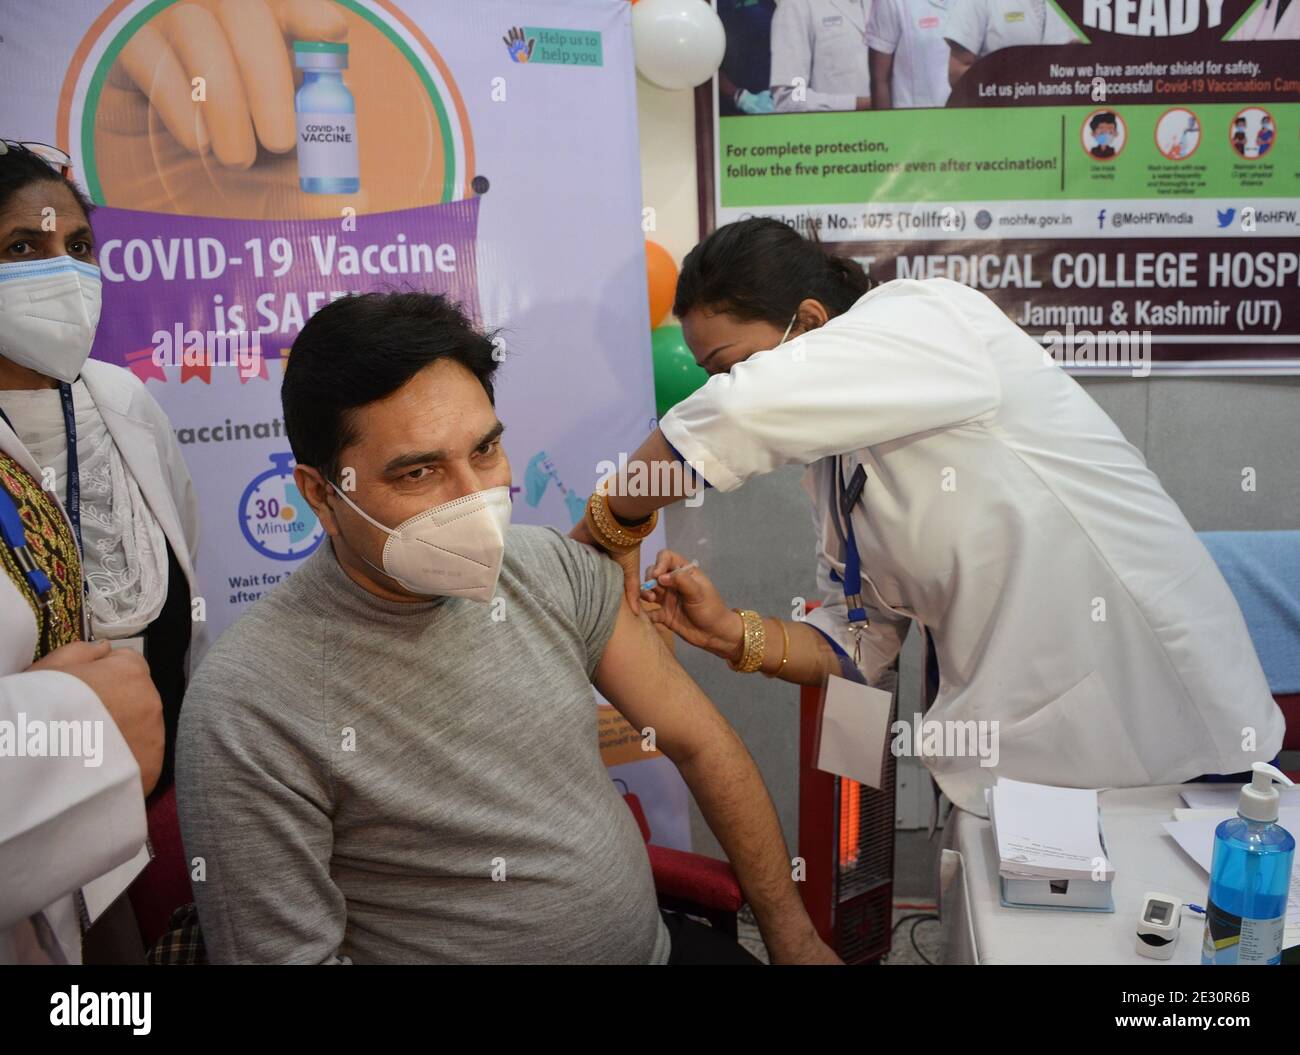 Ein Gesundheitshelfer, der am 16. Januar 2021 in einem Krankenhaus in Jammu während der Impfung in Indien einen Covishield-Impfstoff COVID-19 erhält. (Foto von Bikas Bhagat / INA Photo Agency / Sipa USA) Stockfoto